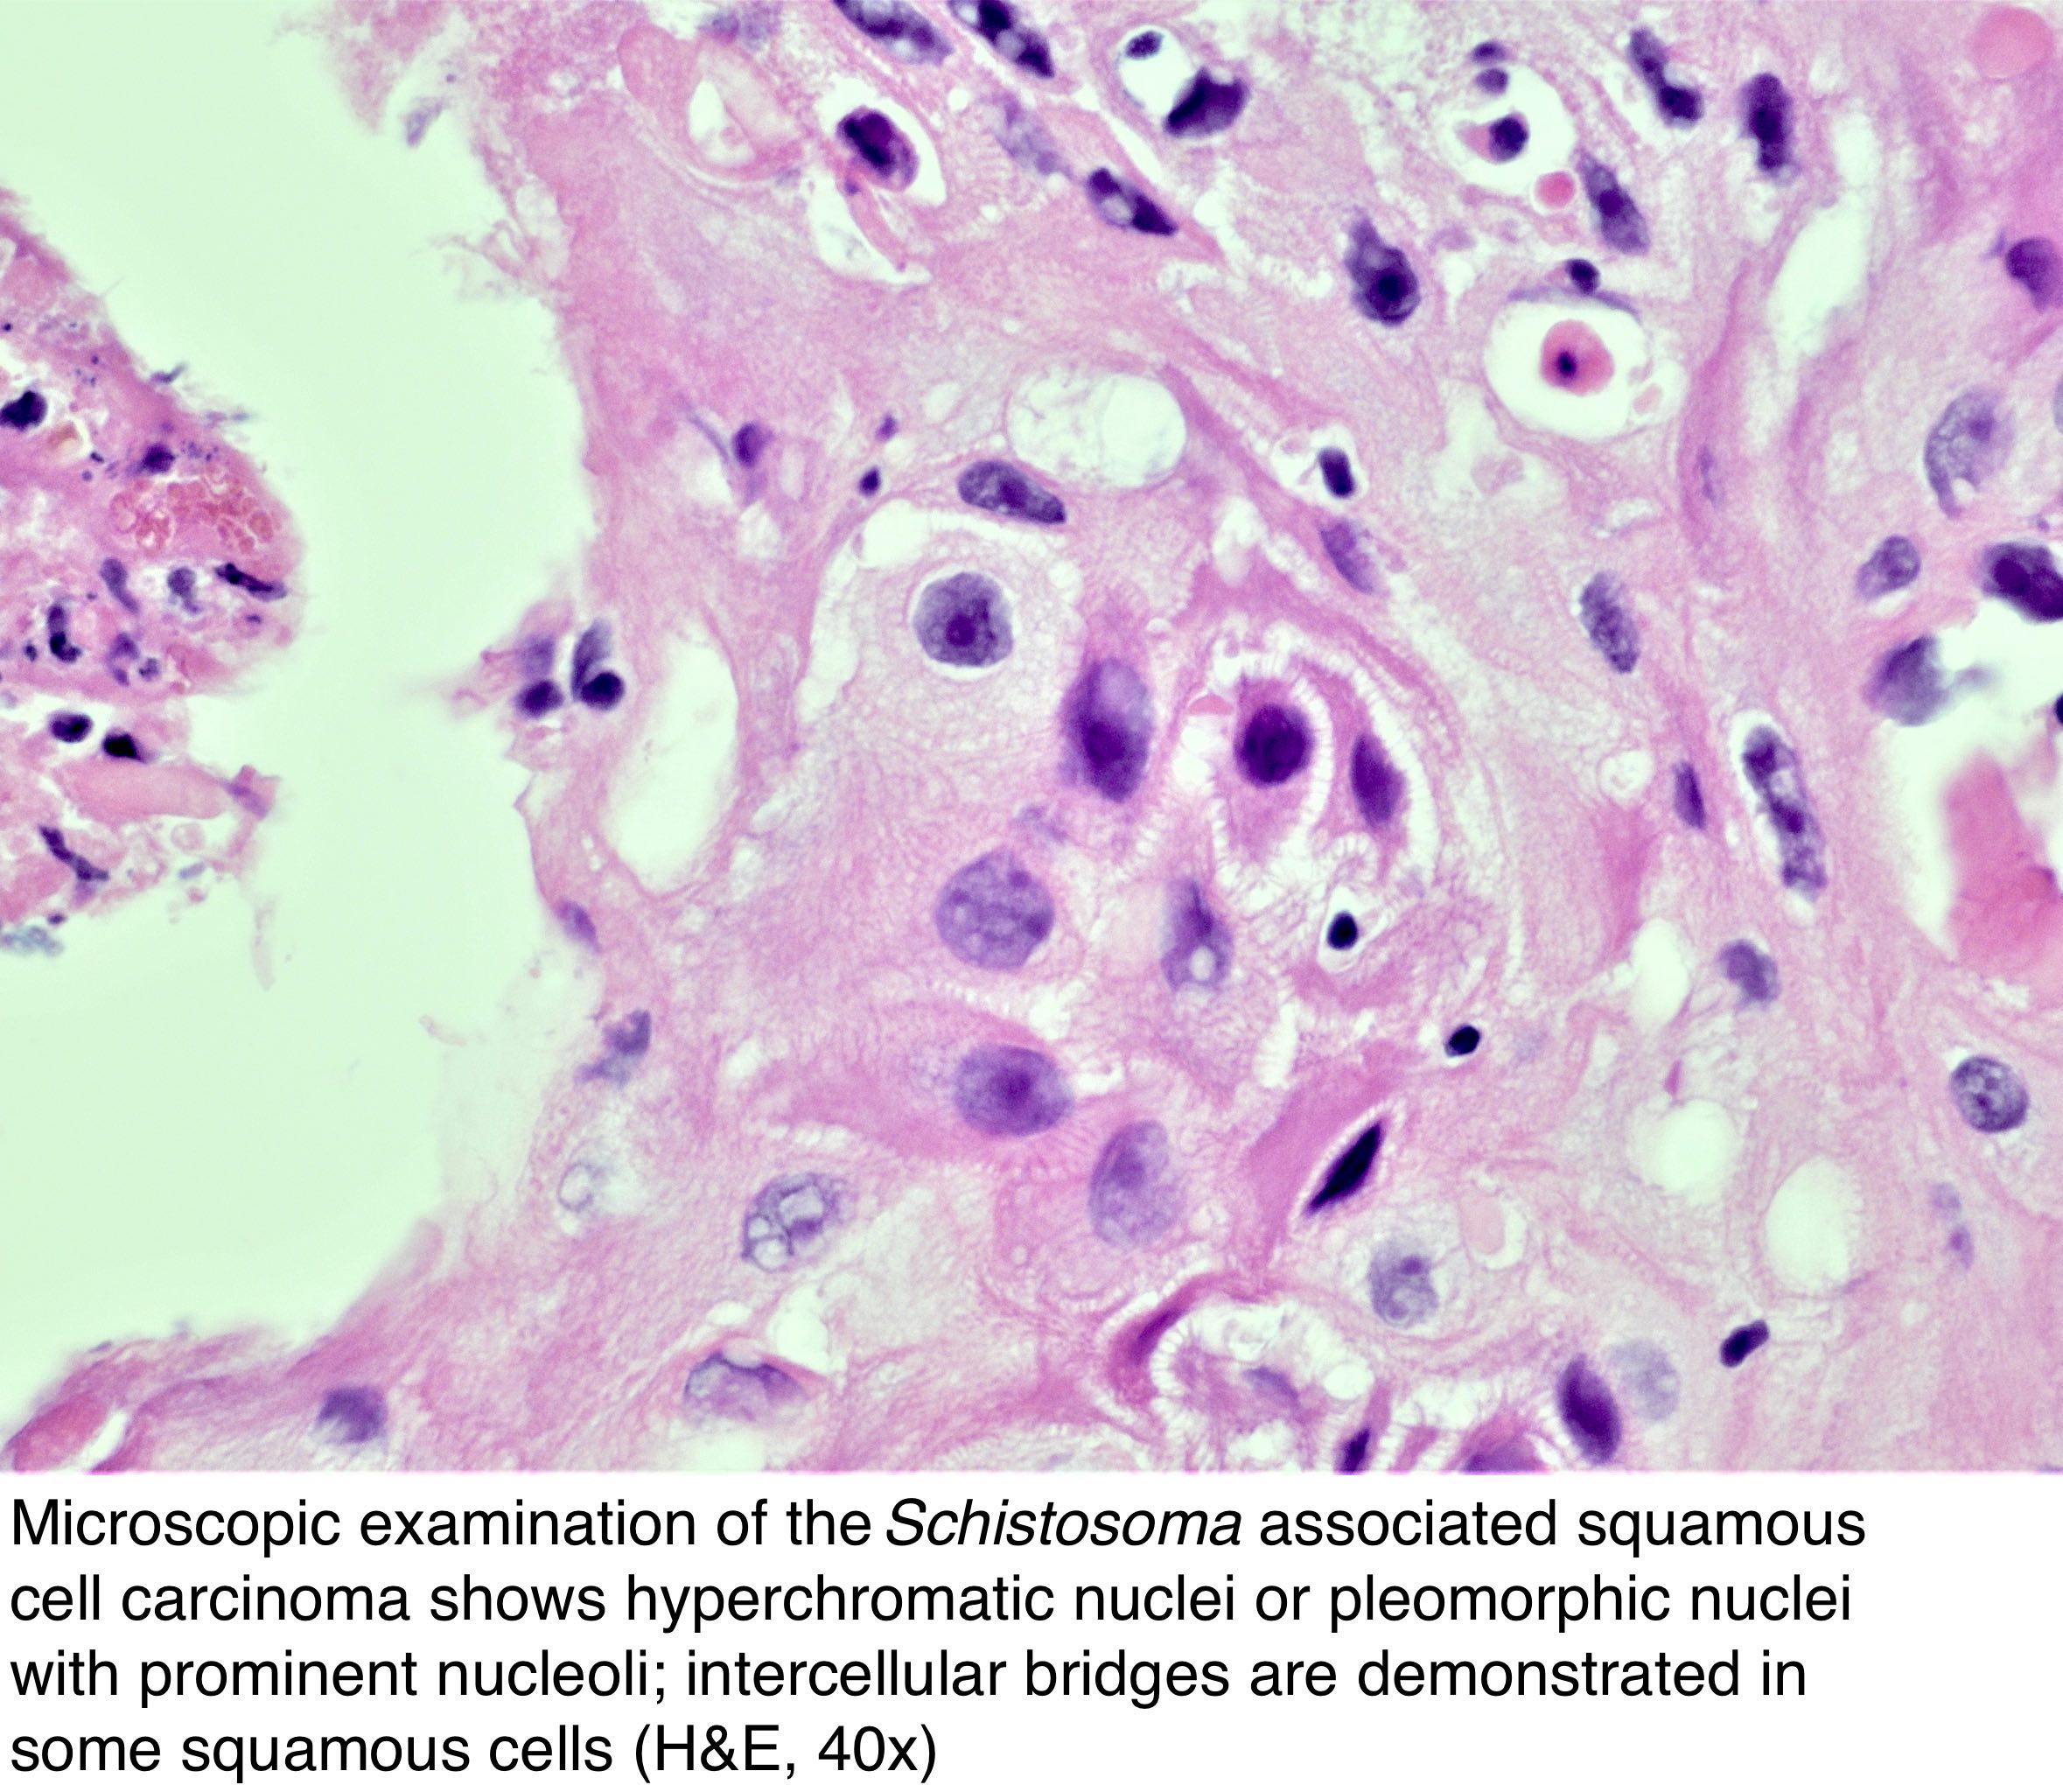 Schistosomiasis bladder. Schistosomiasis bladder cancer, Schistosomiasis organism